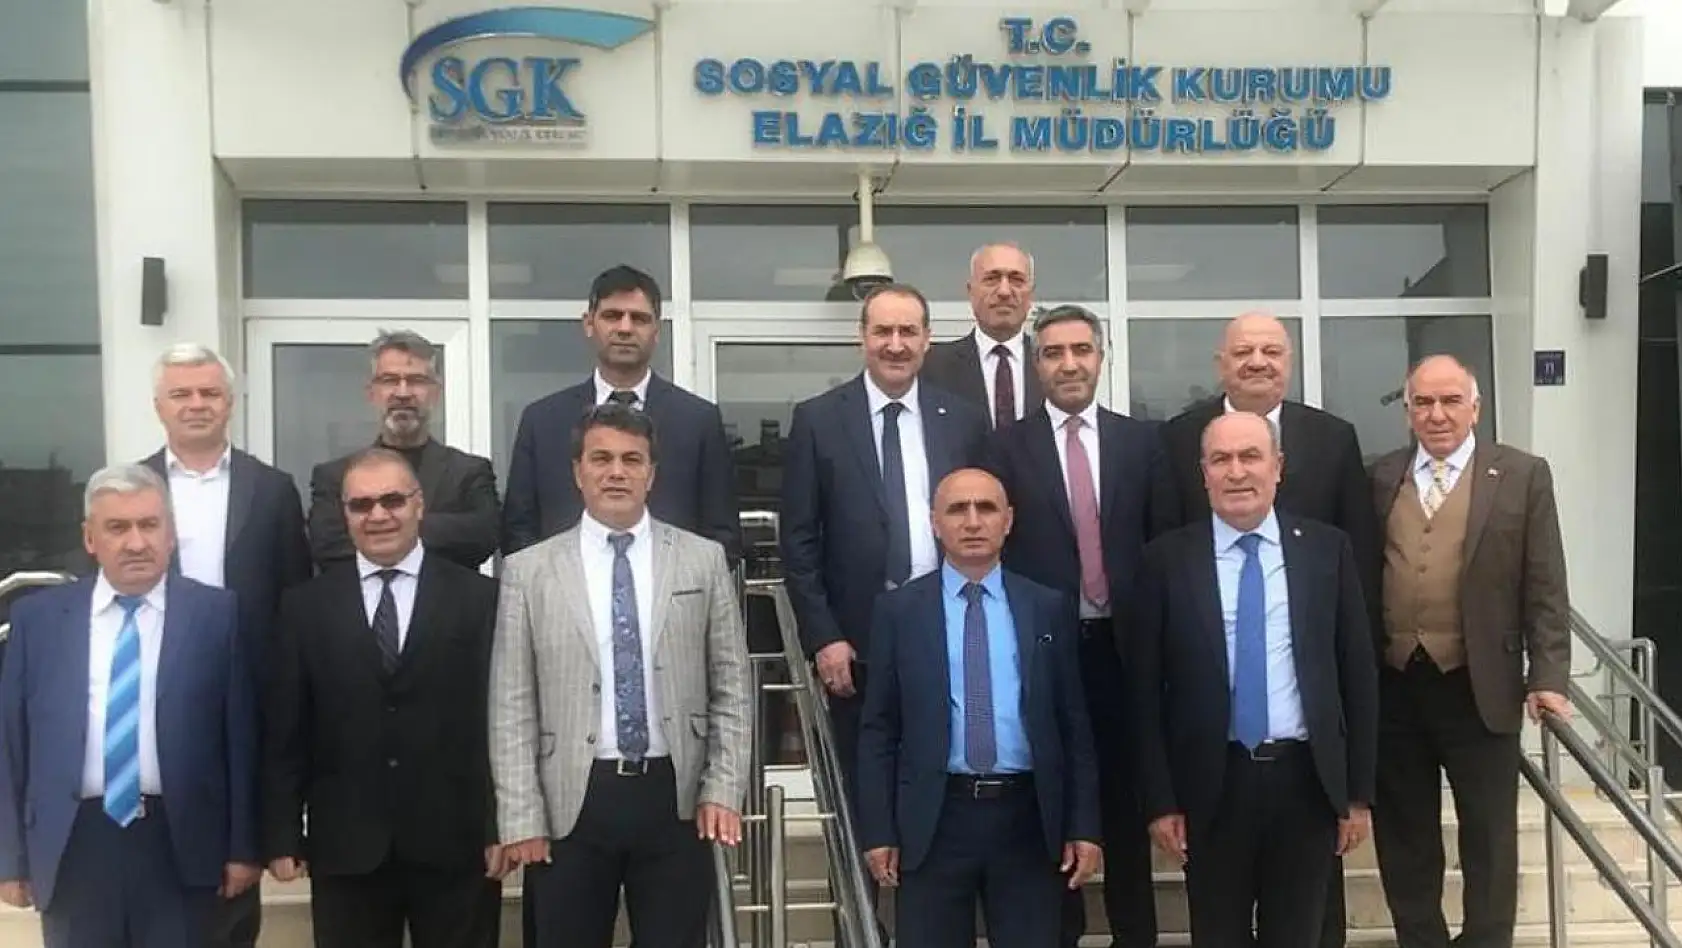 Elazığ'da Bölge Koordinasyon Toplantısı Düzenlendi